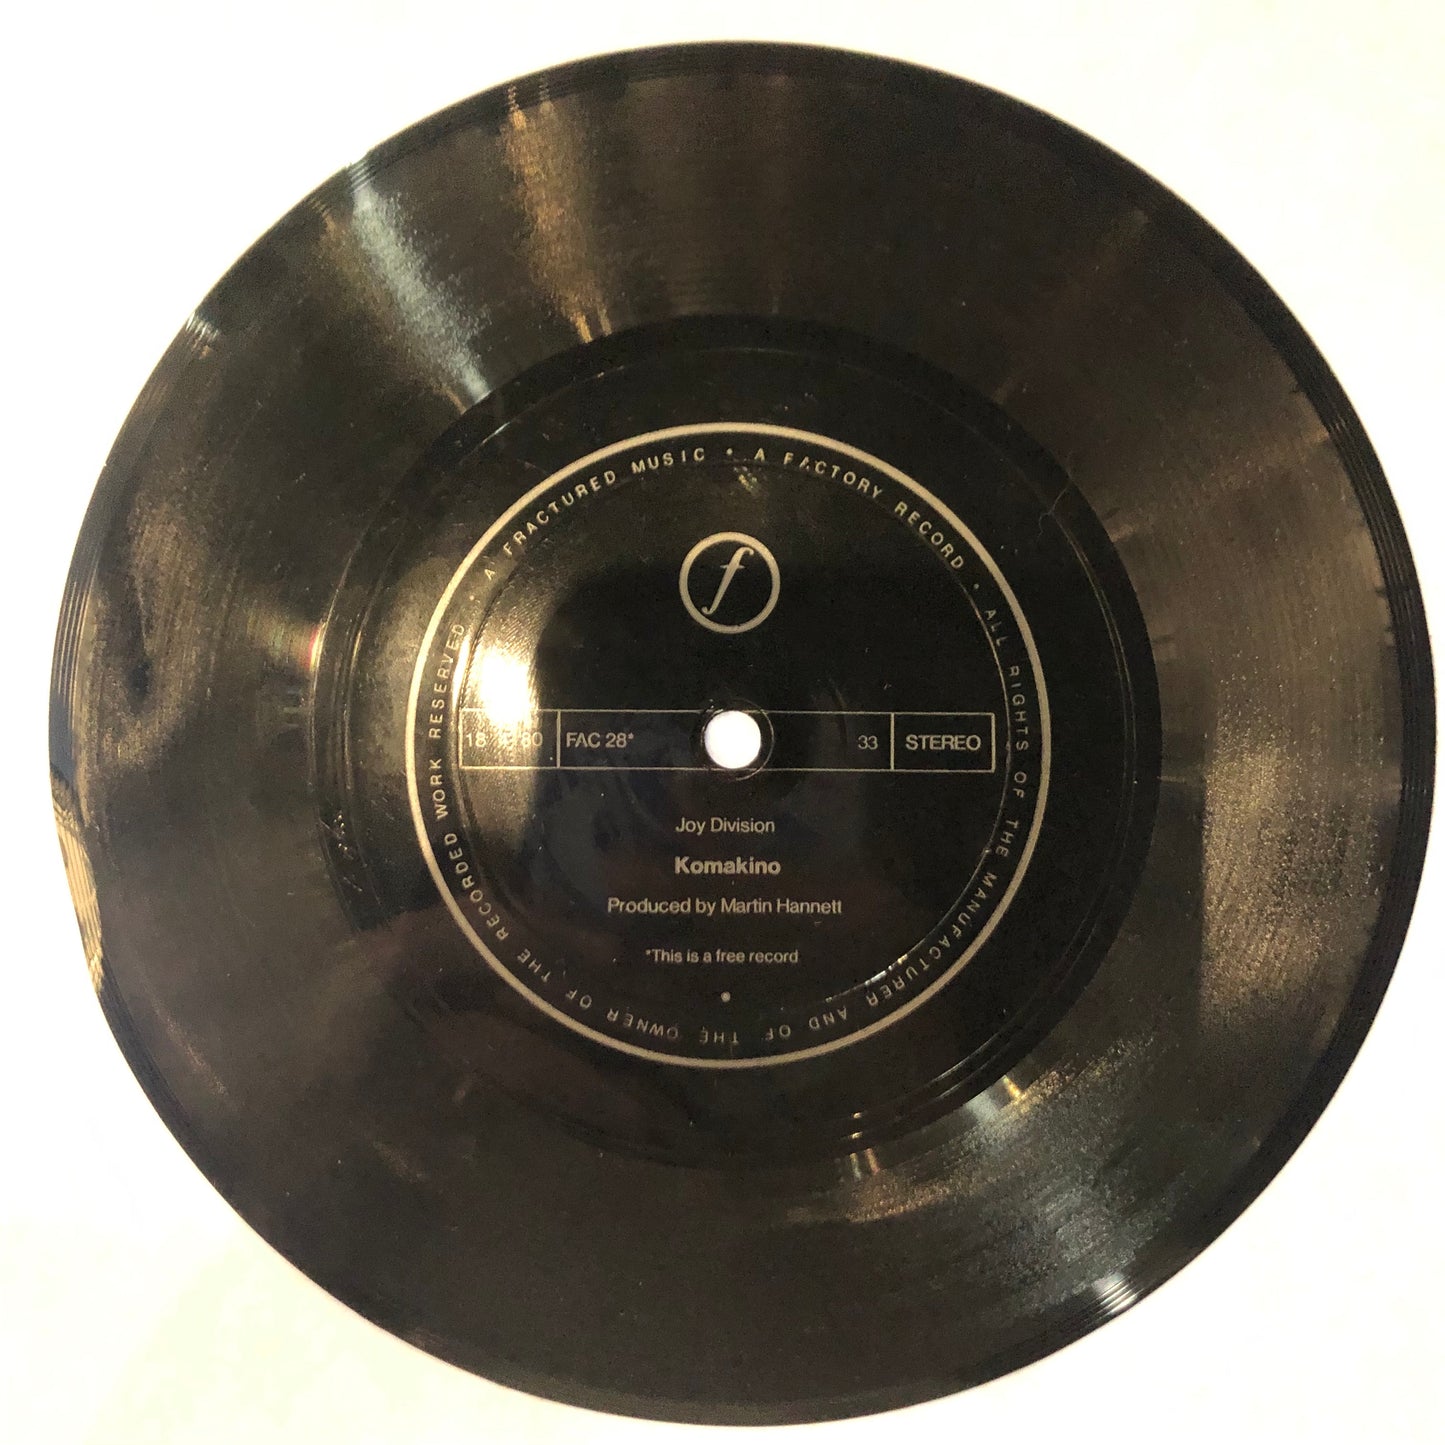 Joy Division "Komaniko" 7" Single (1980)